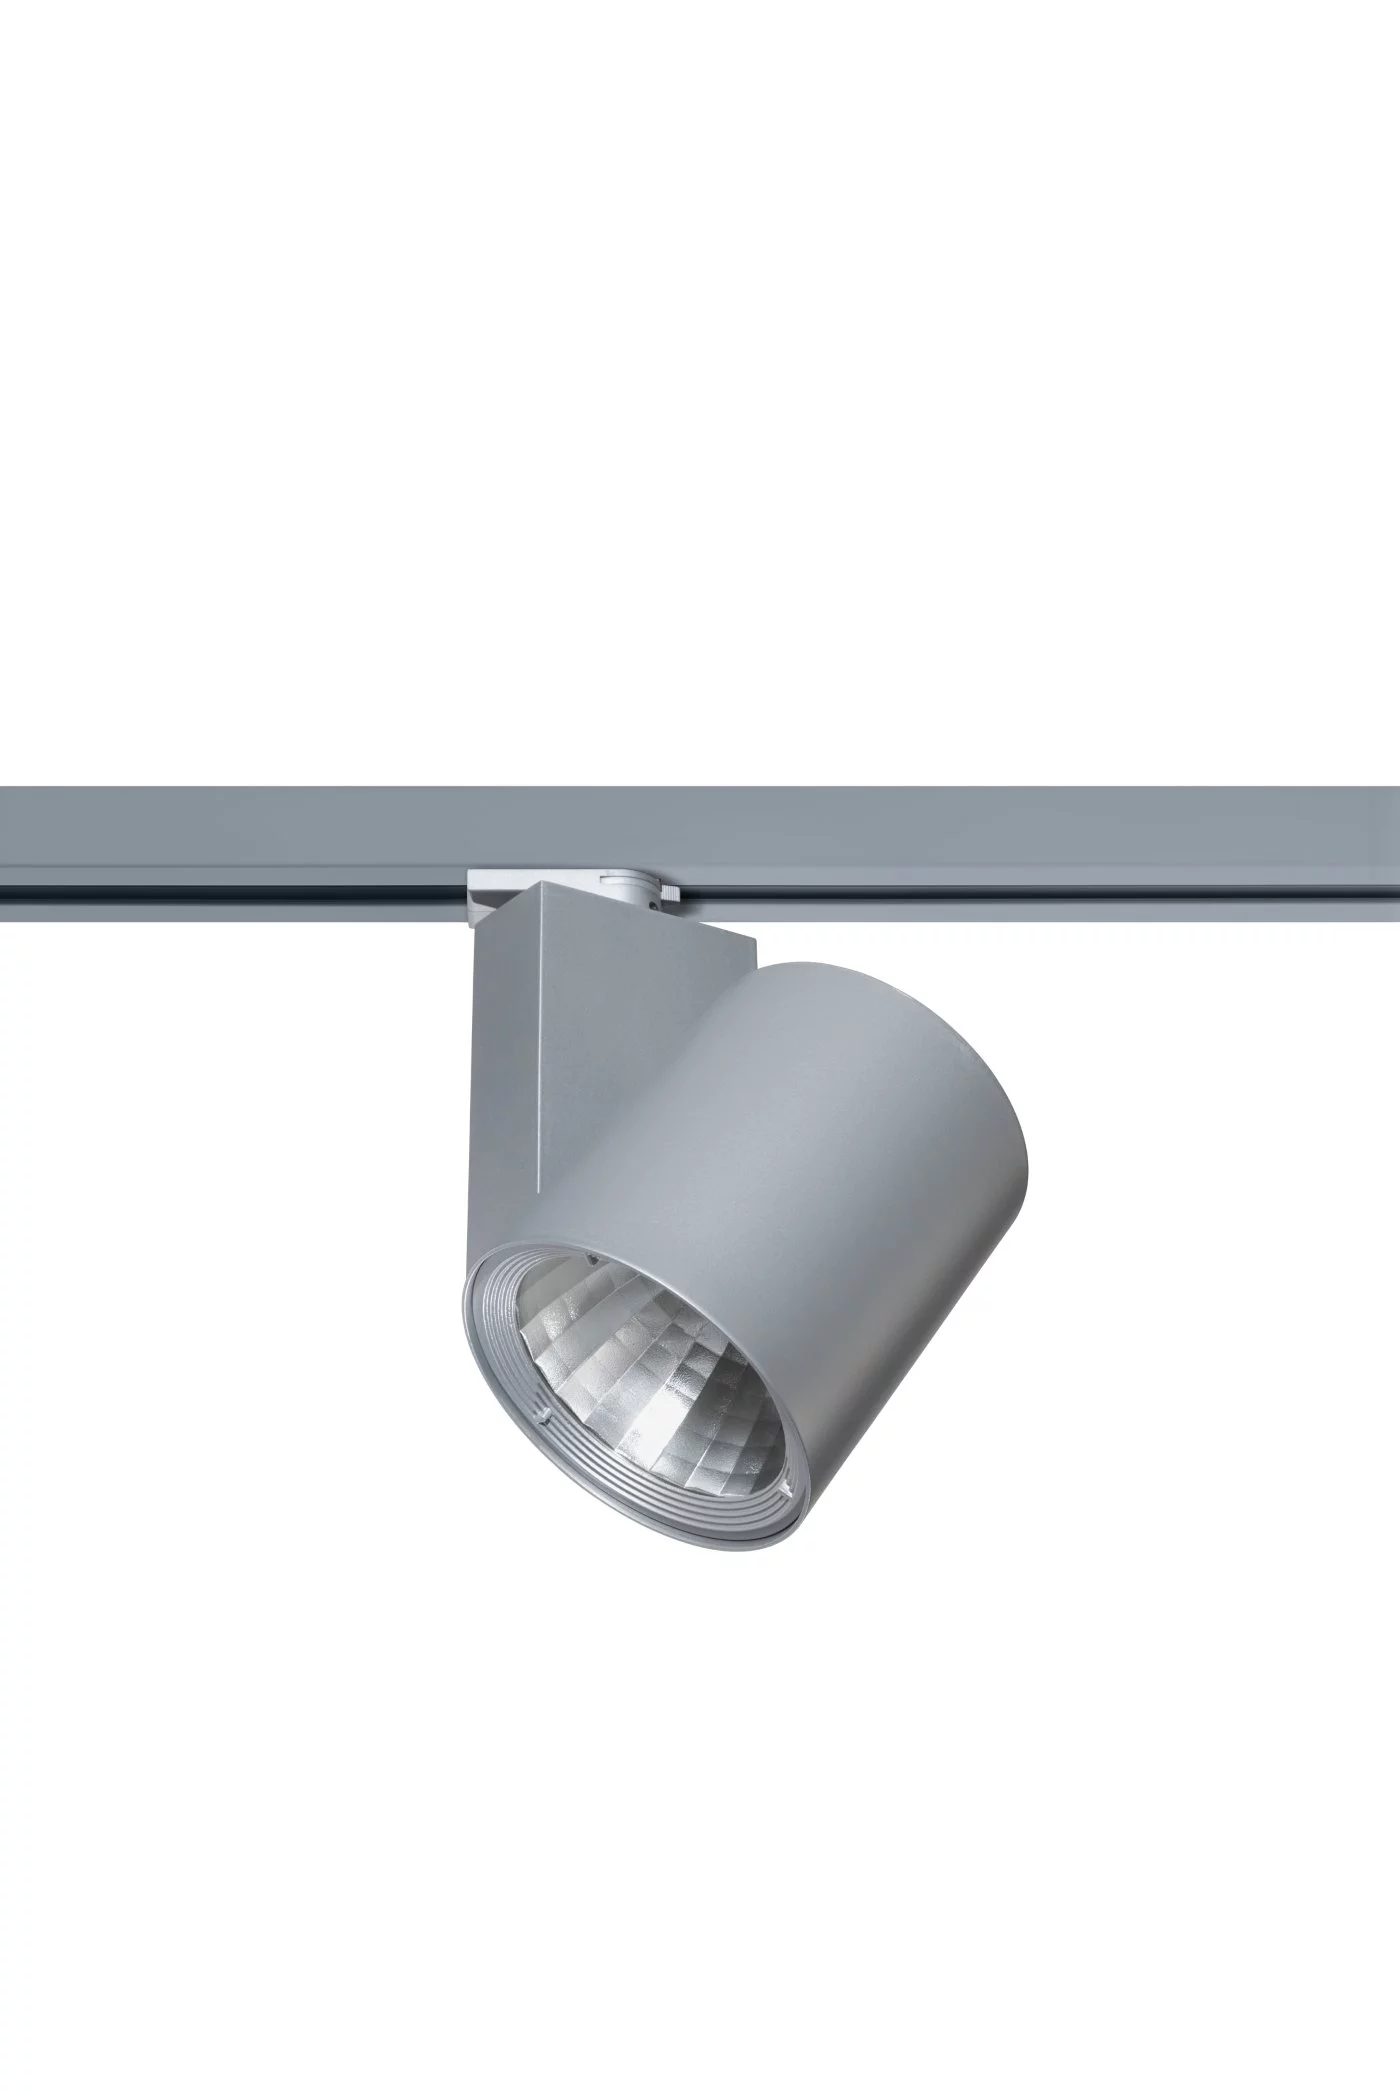   
                        
                        Трековый светильник EGLO (Австрия) 93437    
                         в стиле Хай-тек.  
                        Тип источника света: встроенный led-модуль, несъемный.                         Форма: Круг.                                                                          фото 1